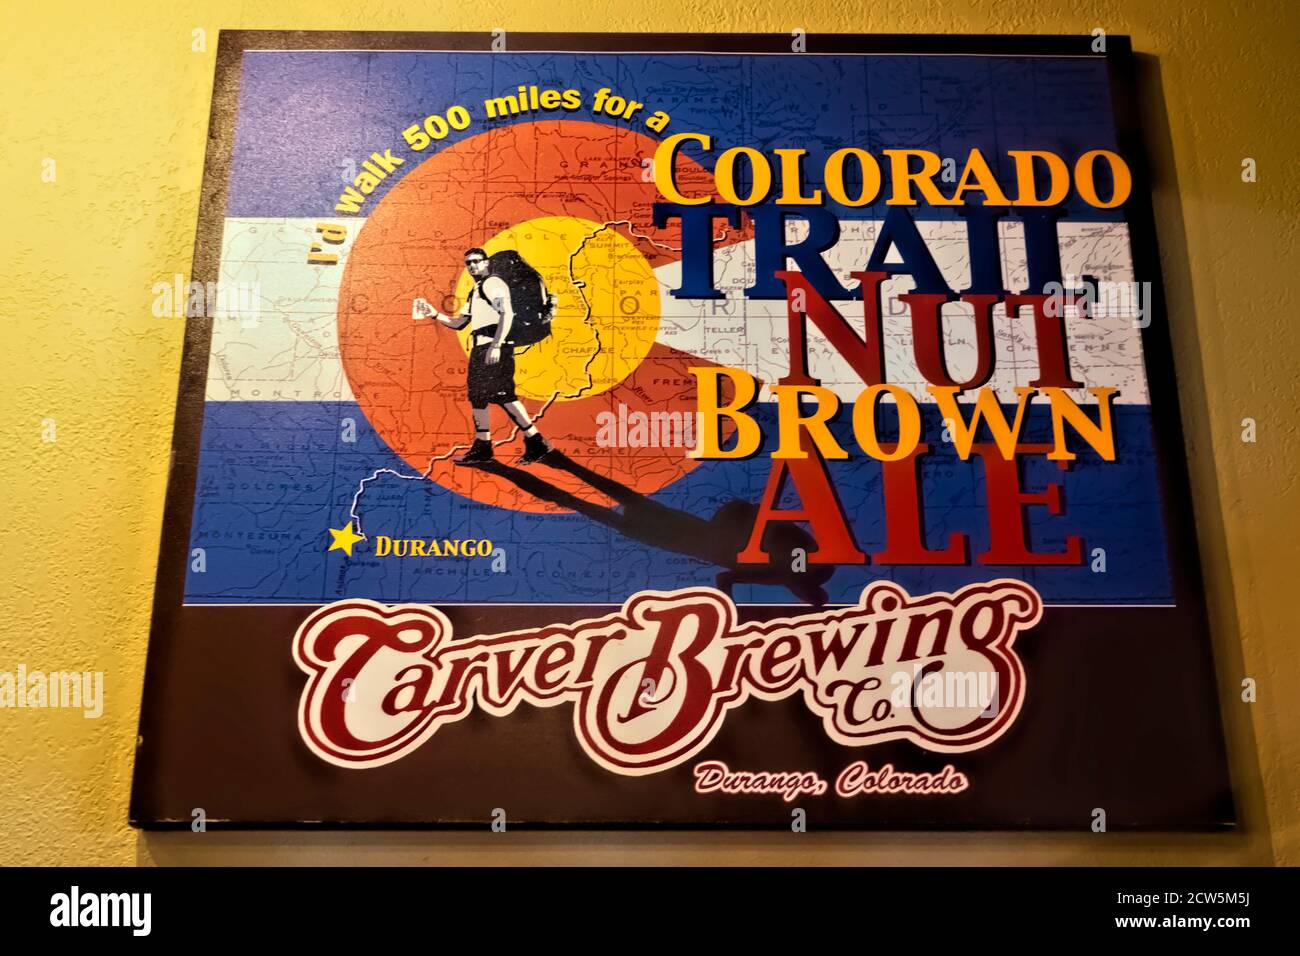 Carver Brewery’s Colorado Trail Ale, Durango, Colorado Stockfoto